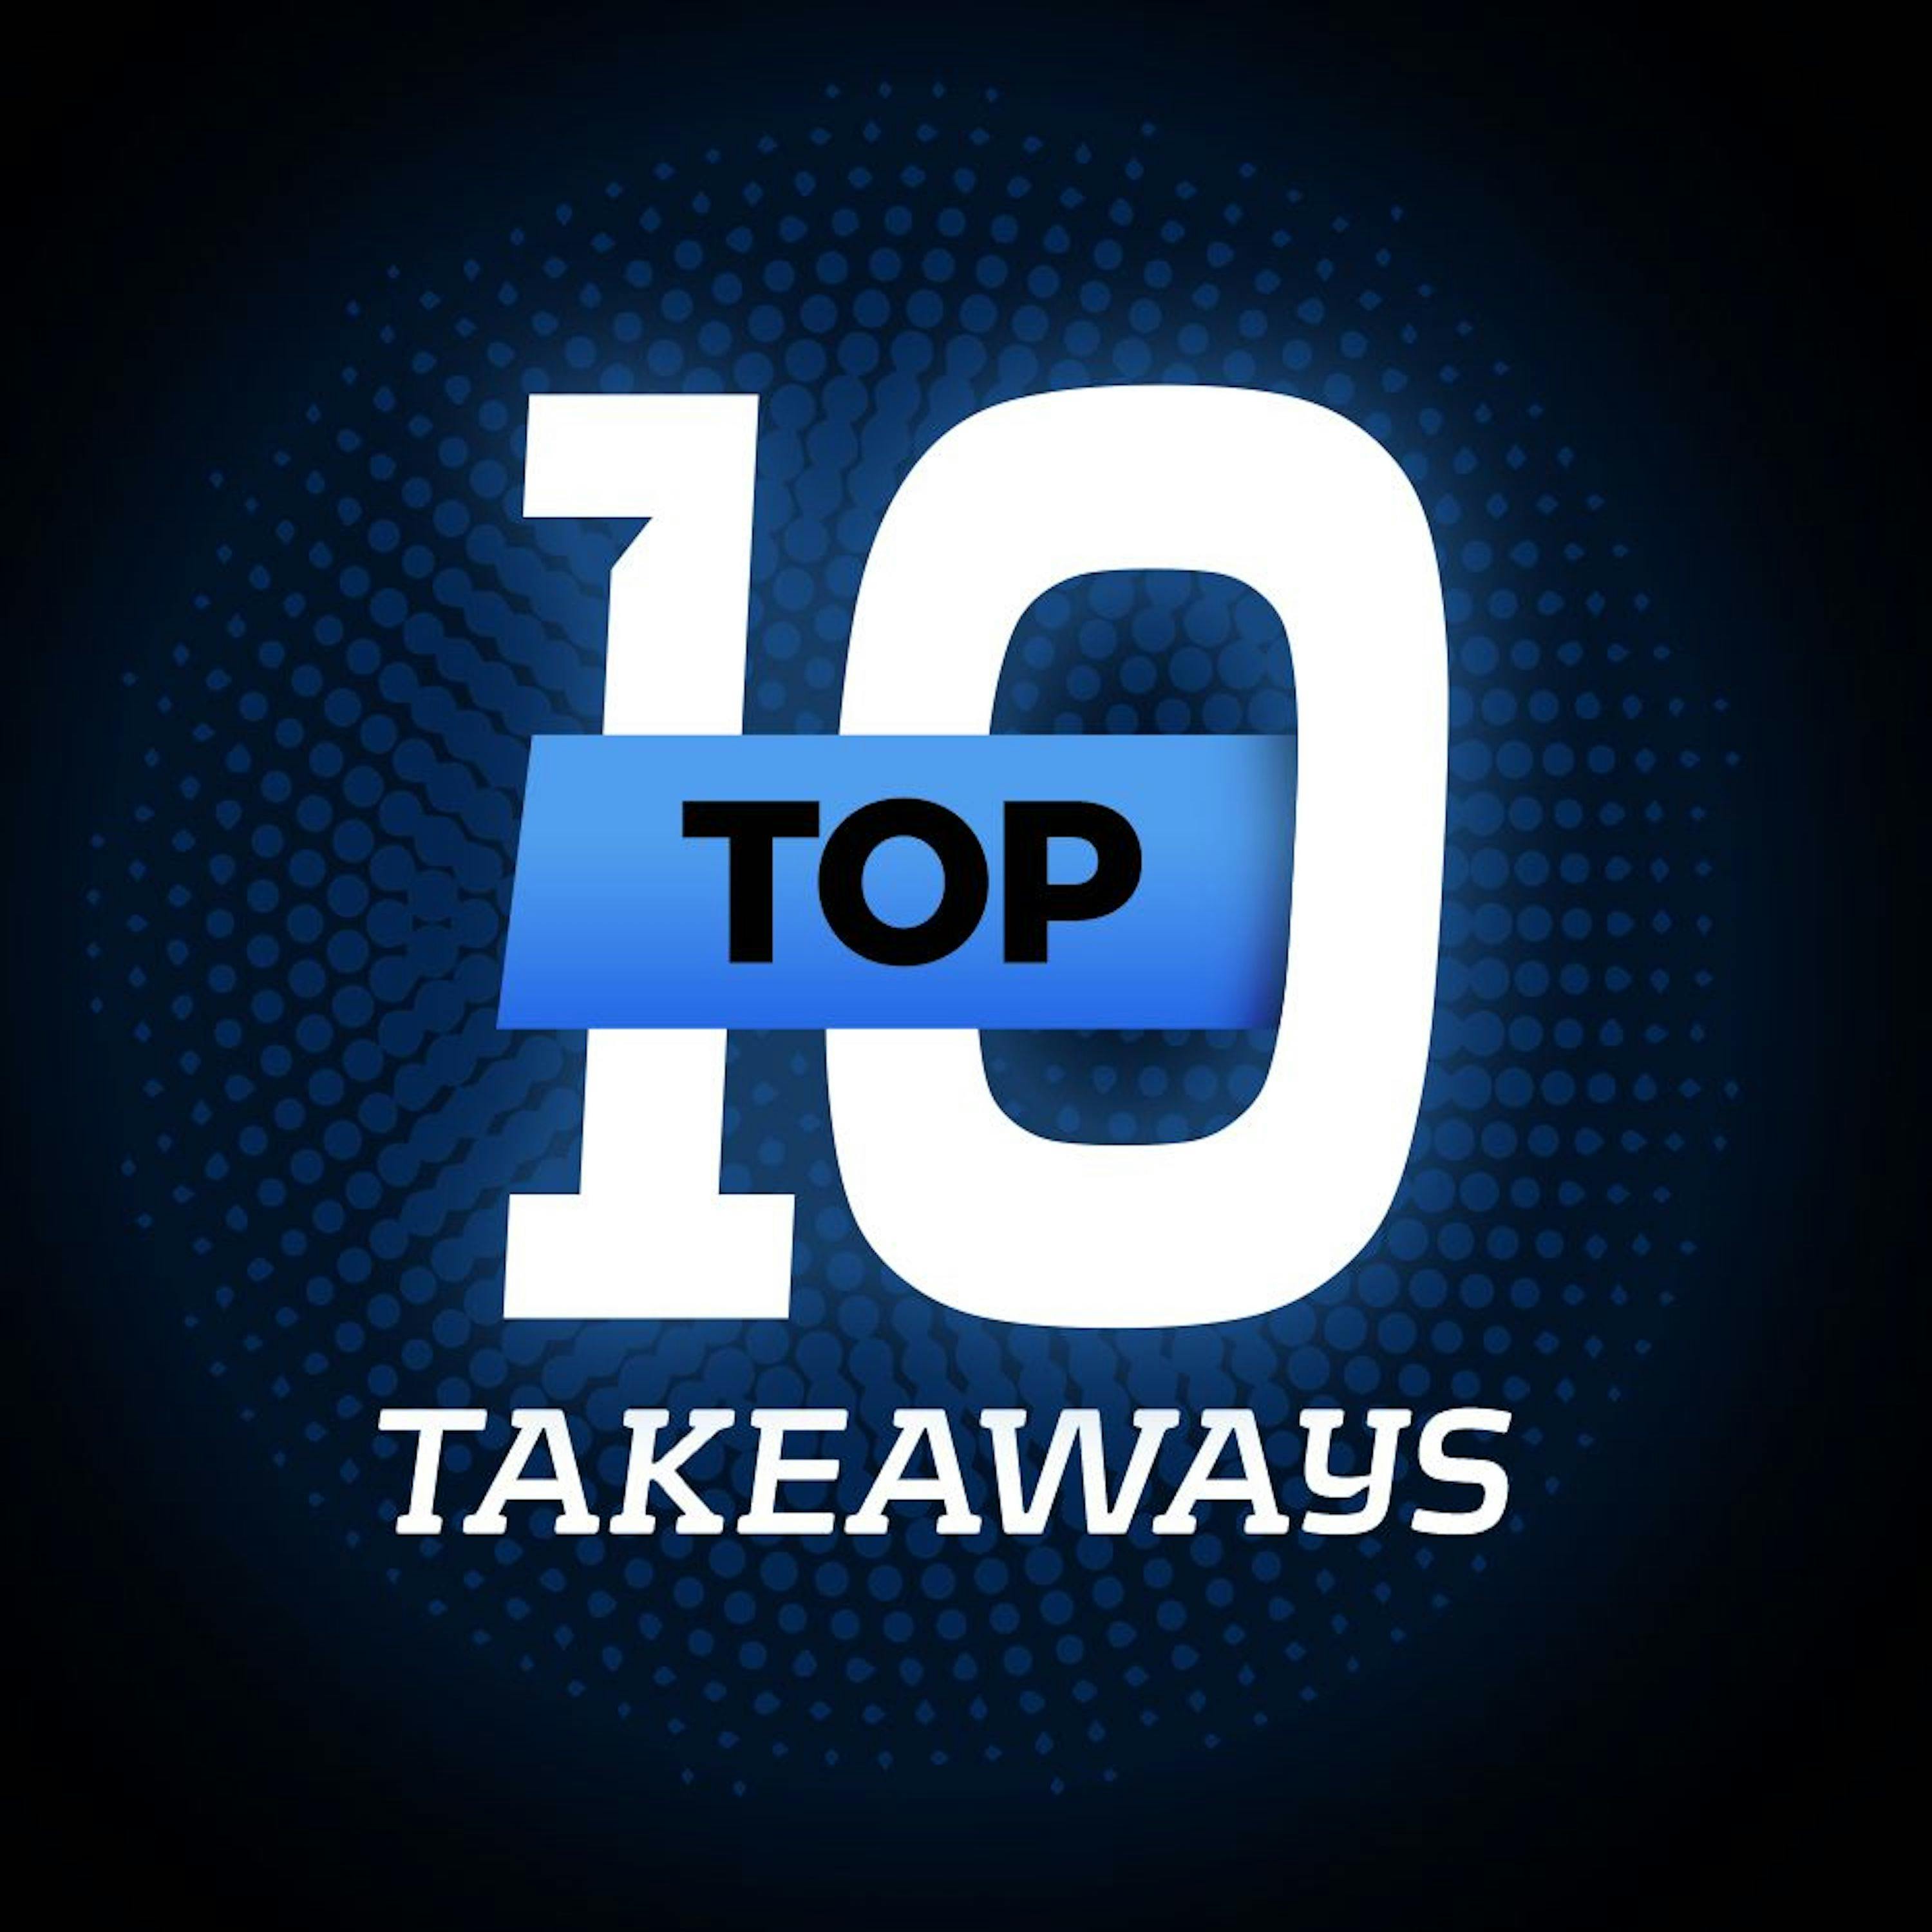 Top-10 Takeaways - Devonta Smith smooth operator